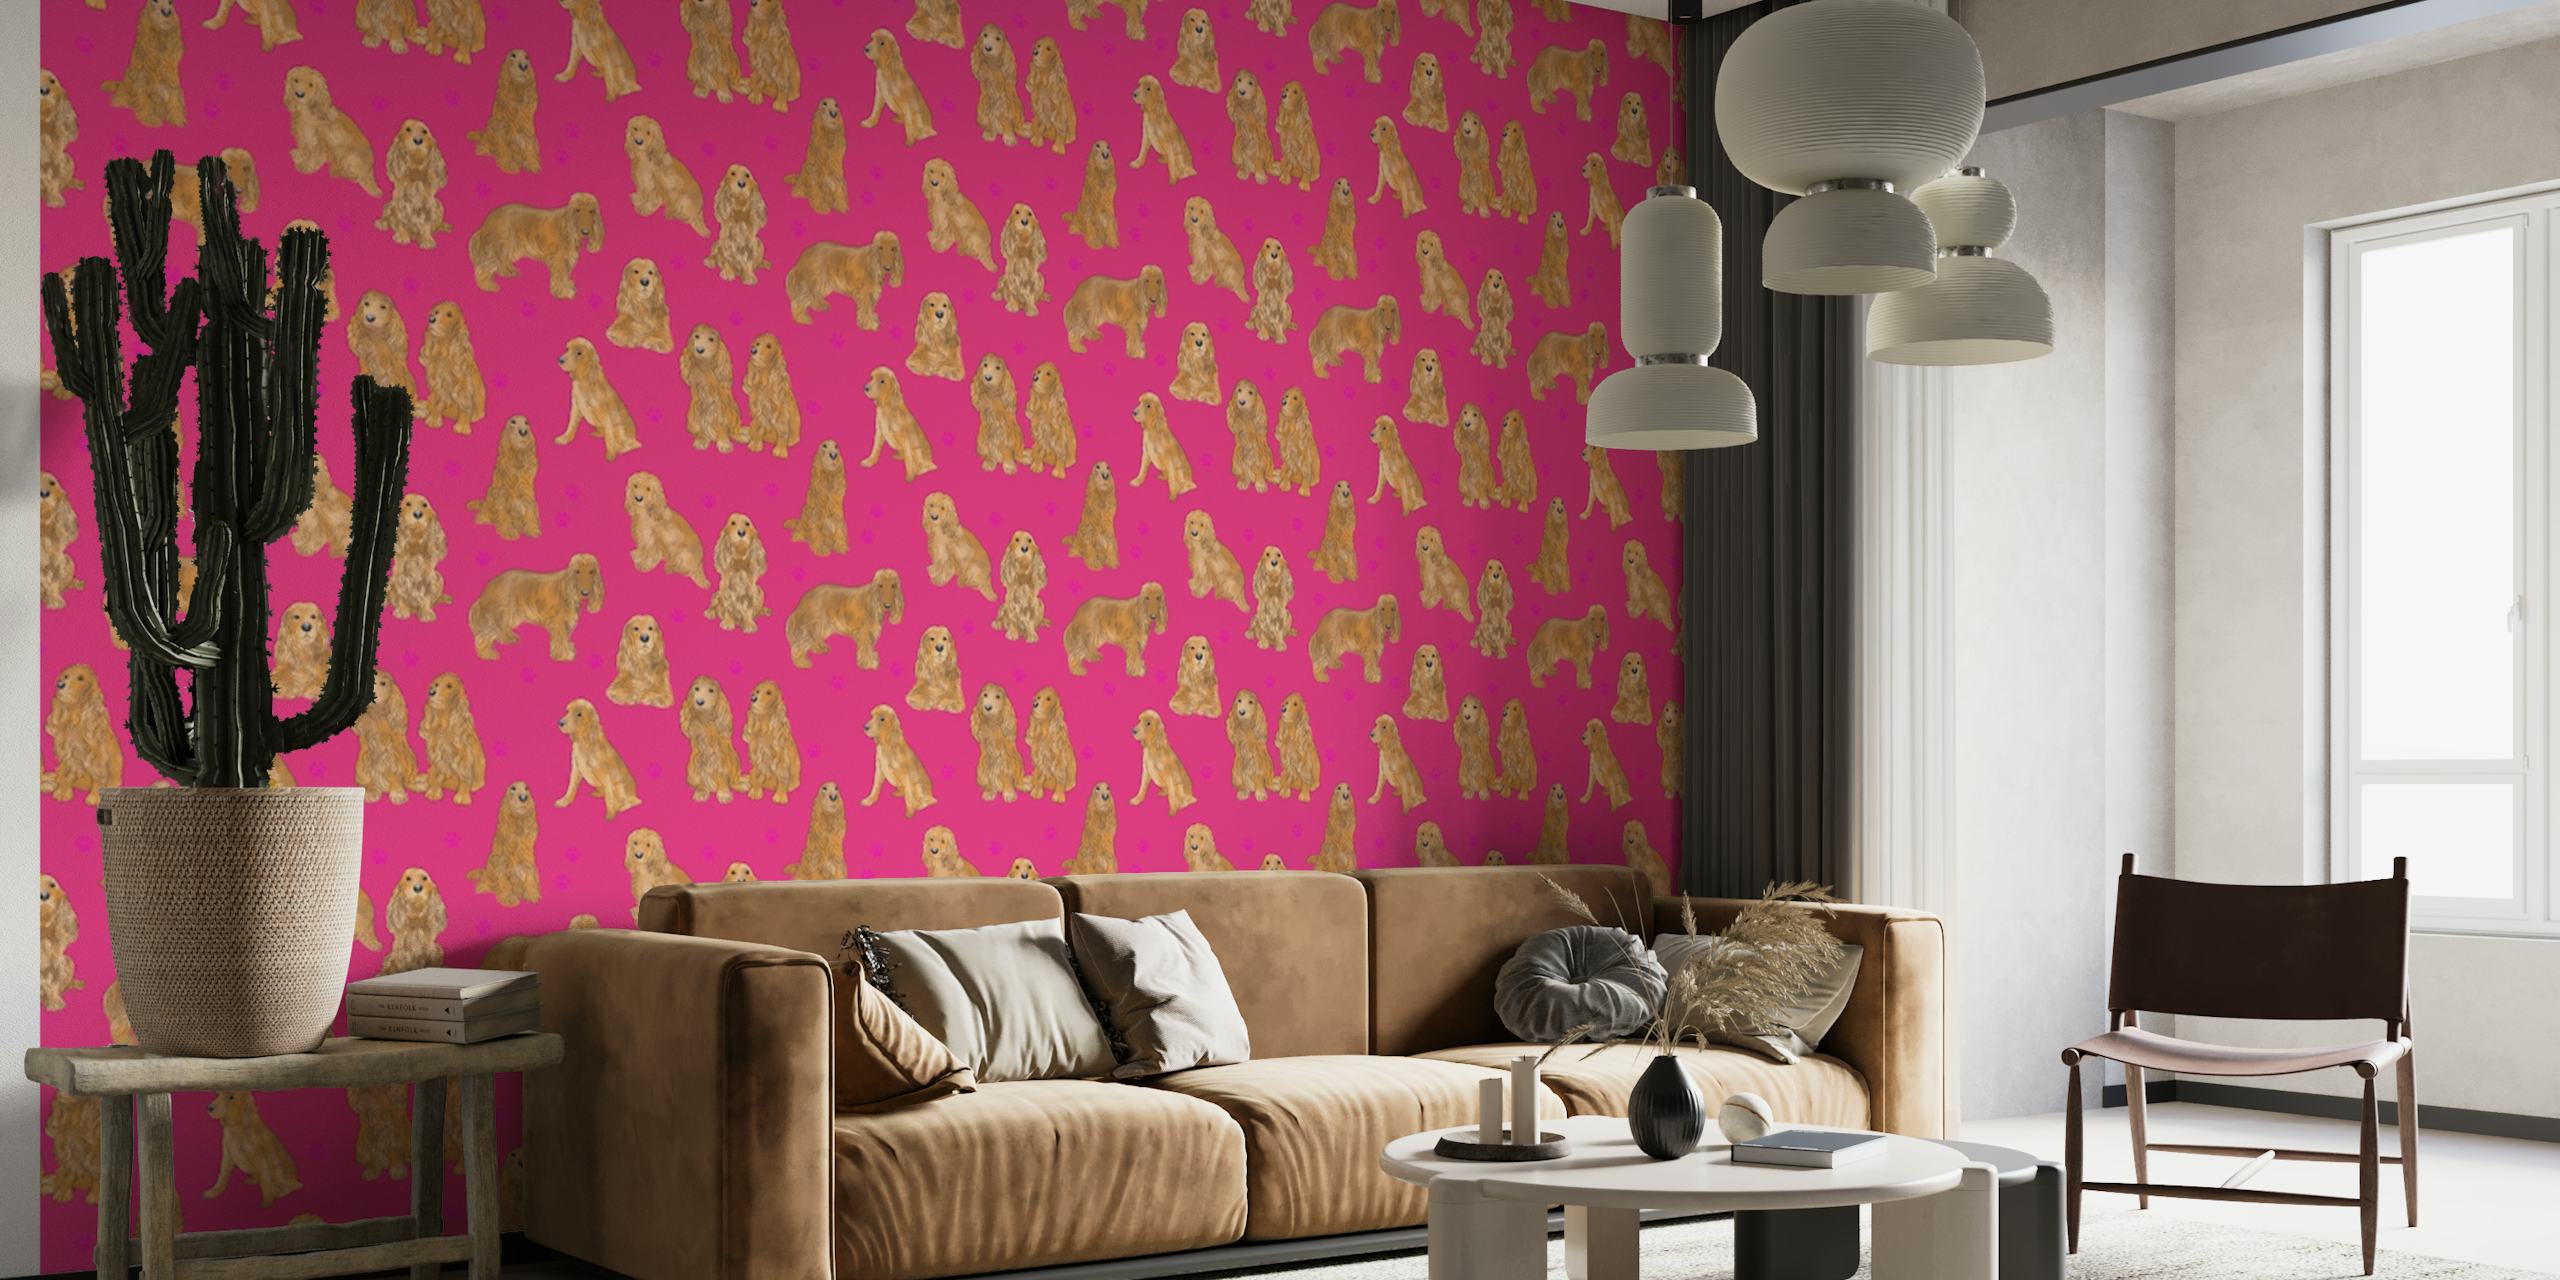 Fototapet med mönster av Cocker Spaniel-hundar på rosa bakgrund